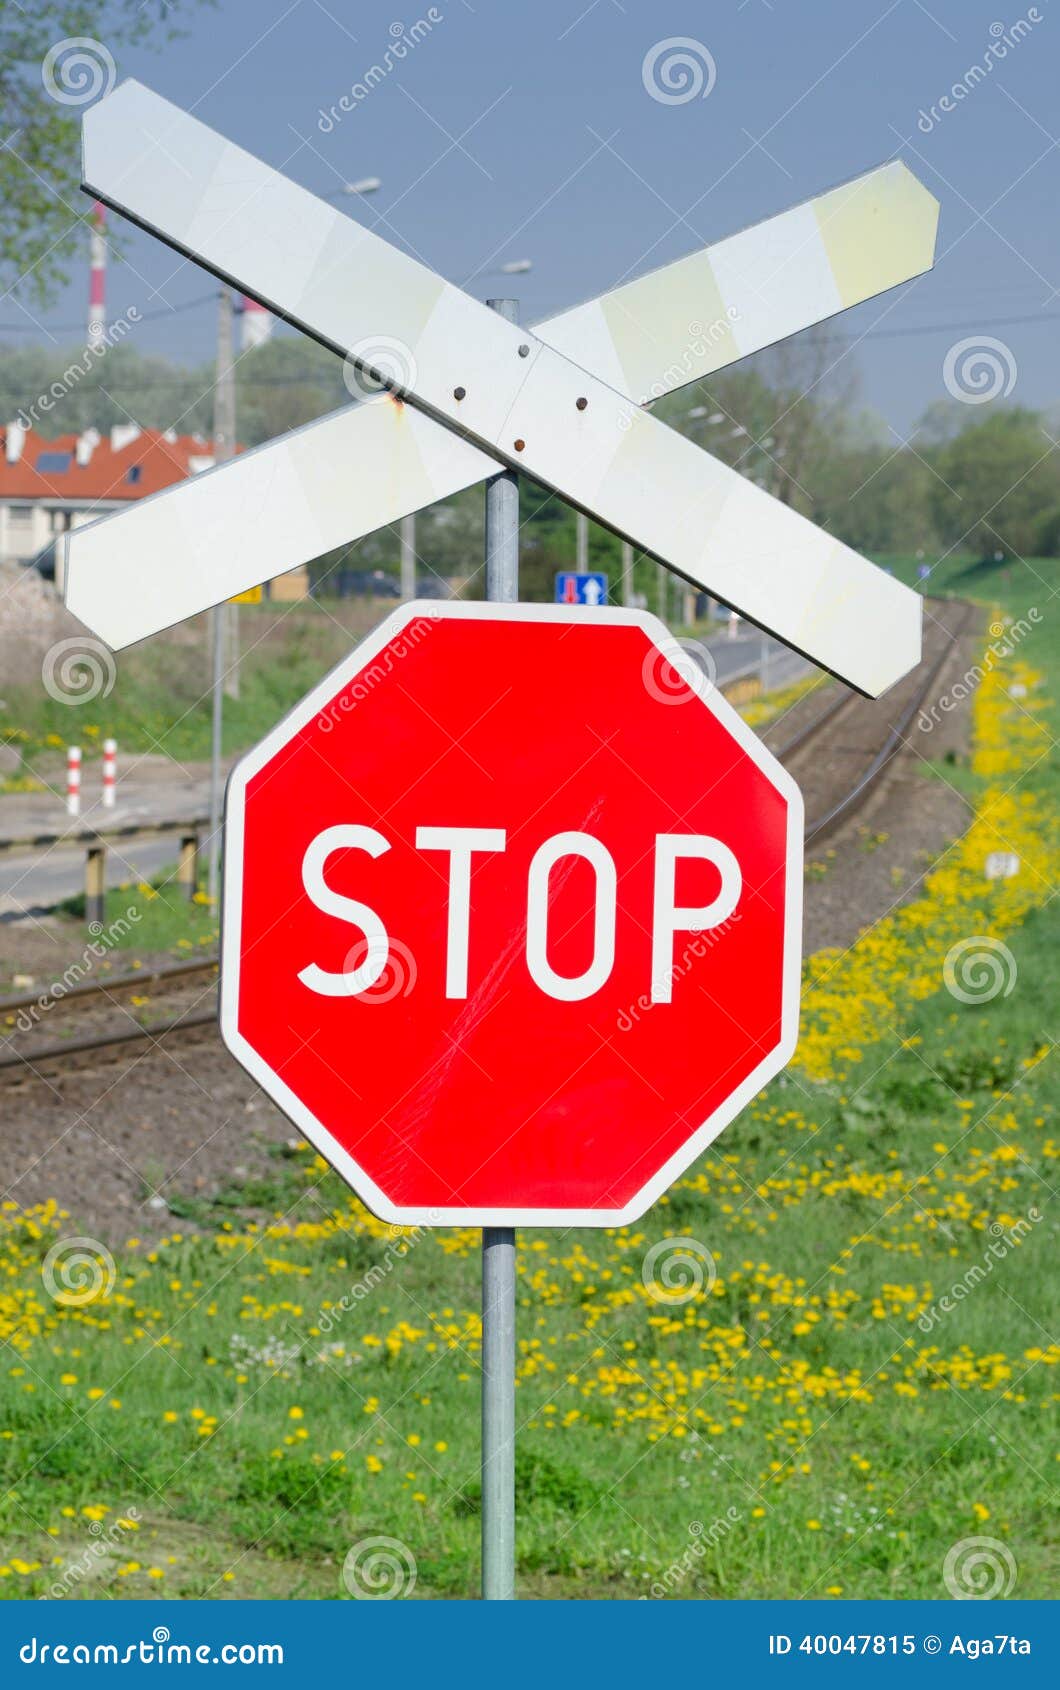 railway-stop-sign-red-cross-40047815.jpg